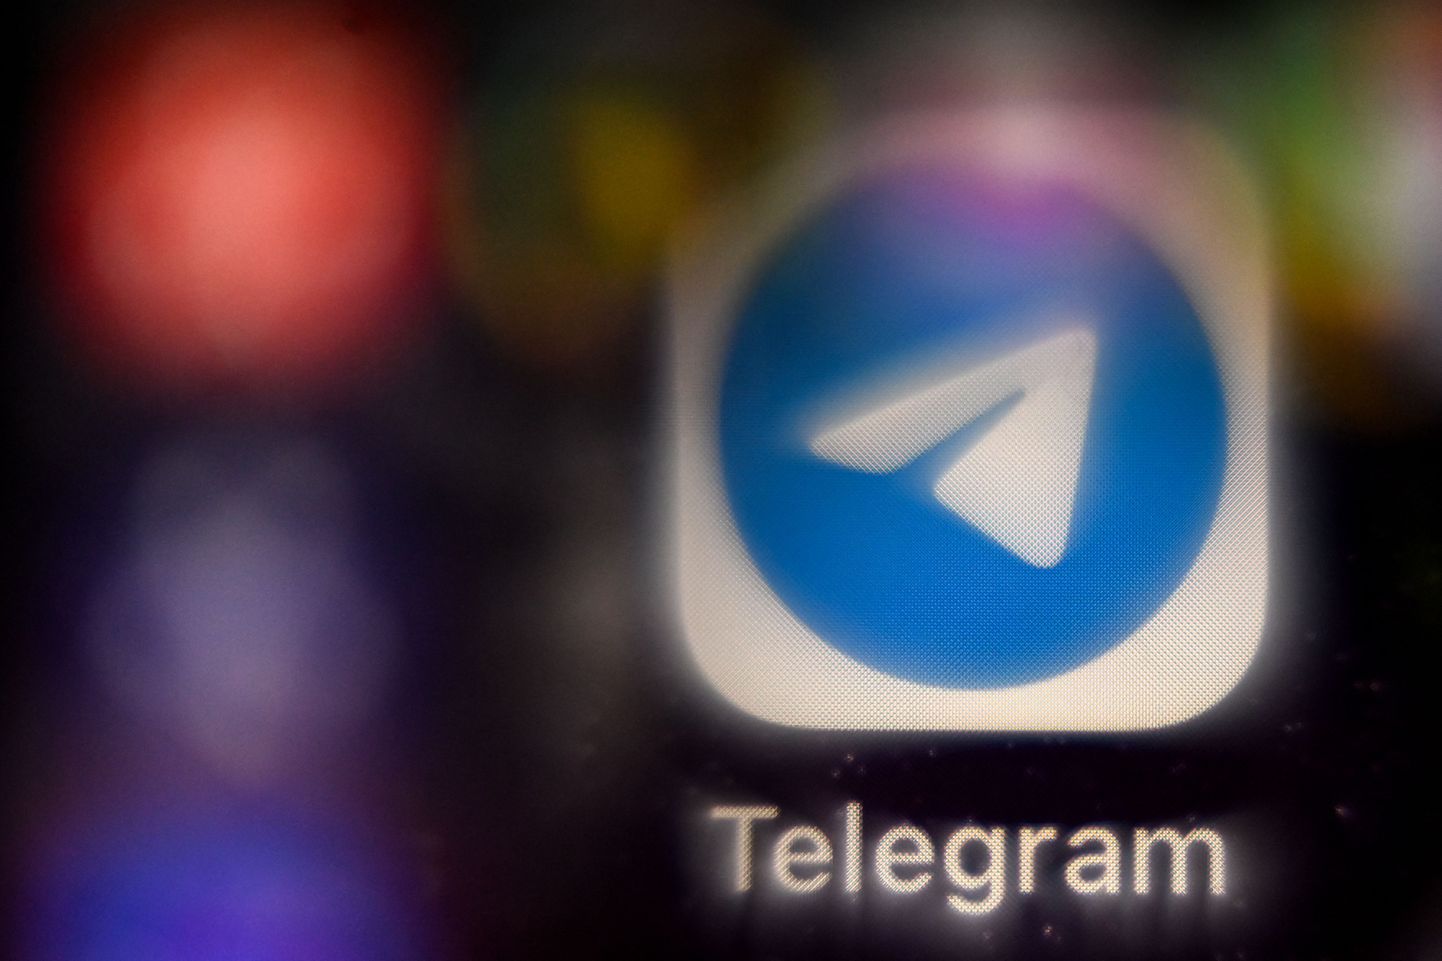 Власти Ирака заблокировали в стране мессенджер Telegram. До этого Telegram полностью блокировался только в Иране и Китае.